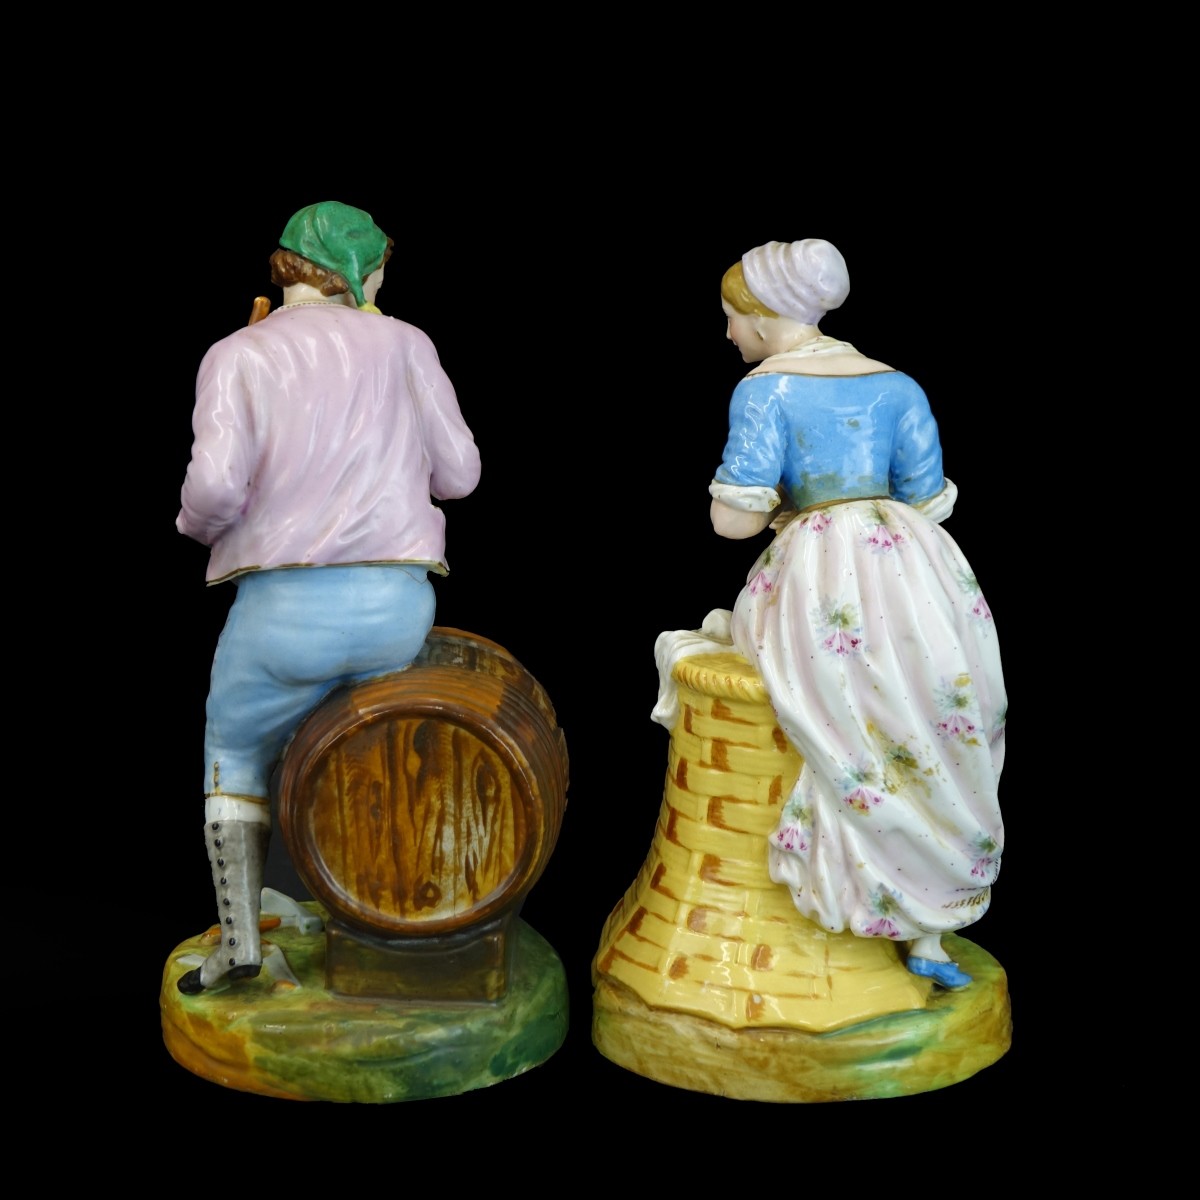 Pair of German Porcelain Figurines